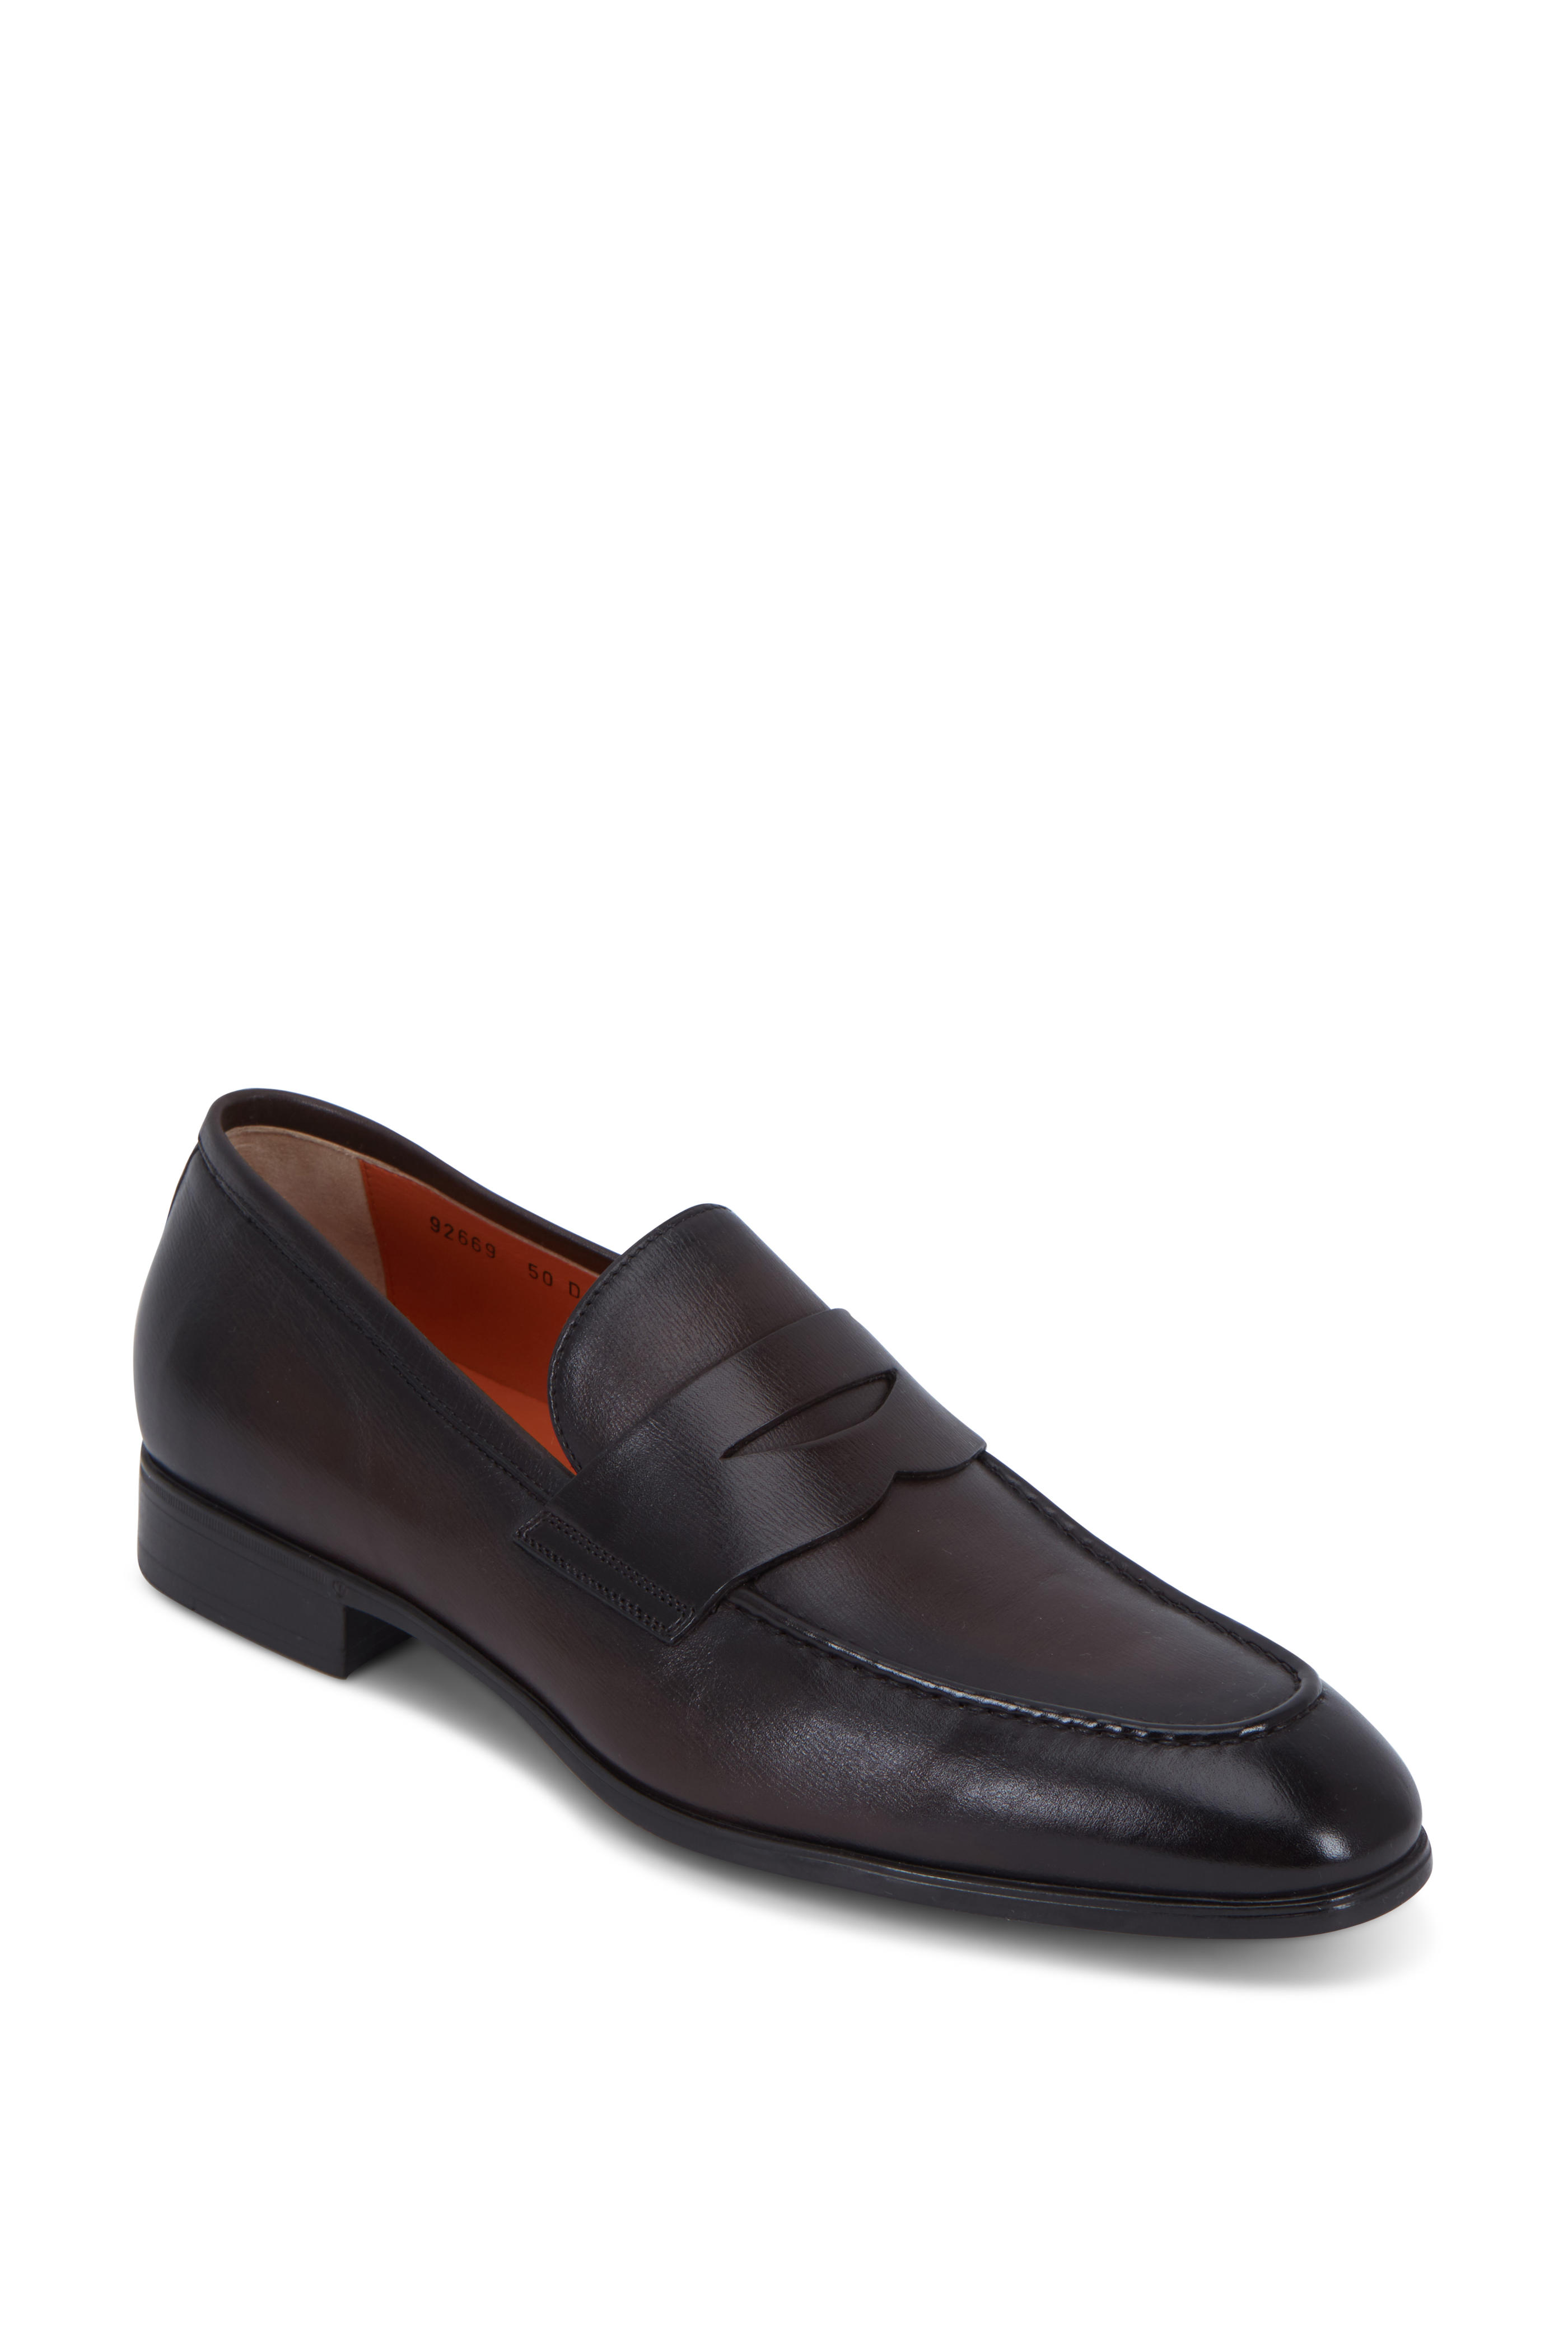 santoni leather loafers